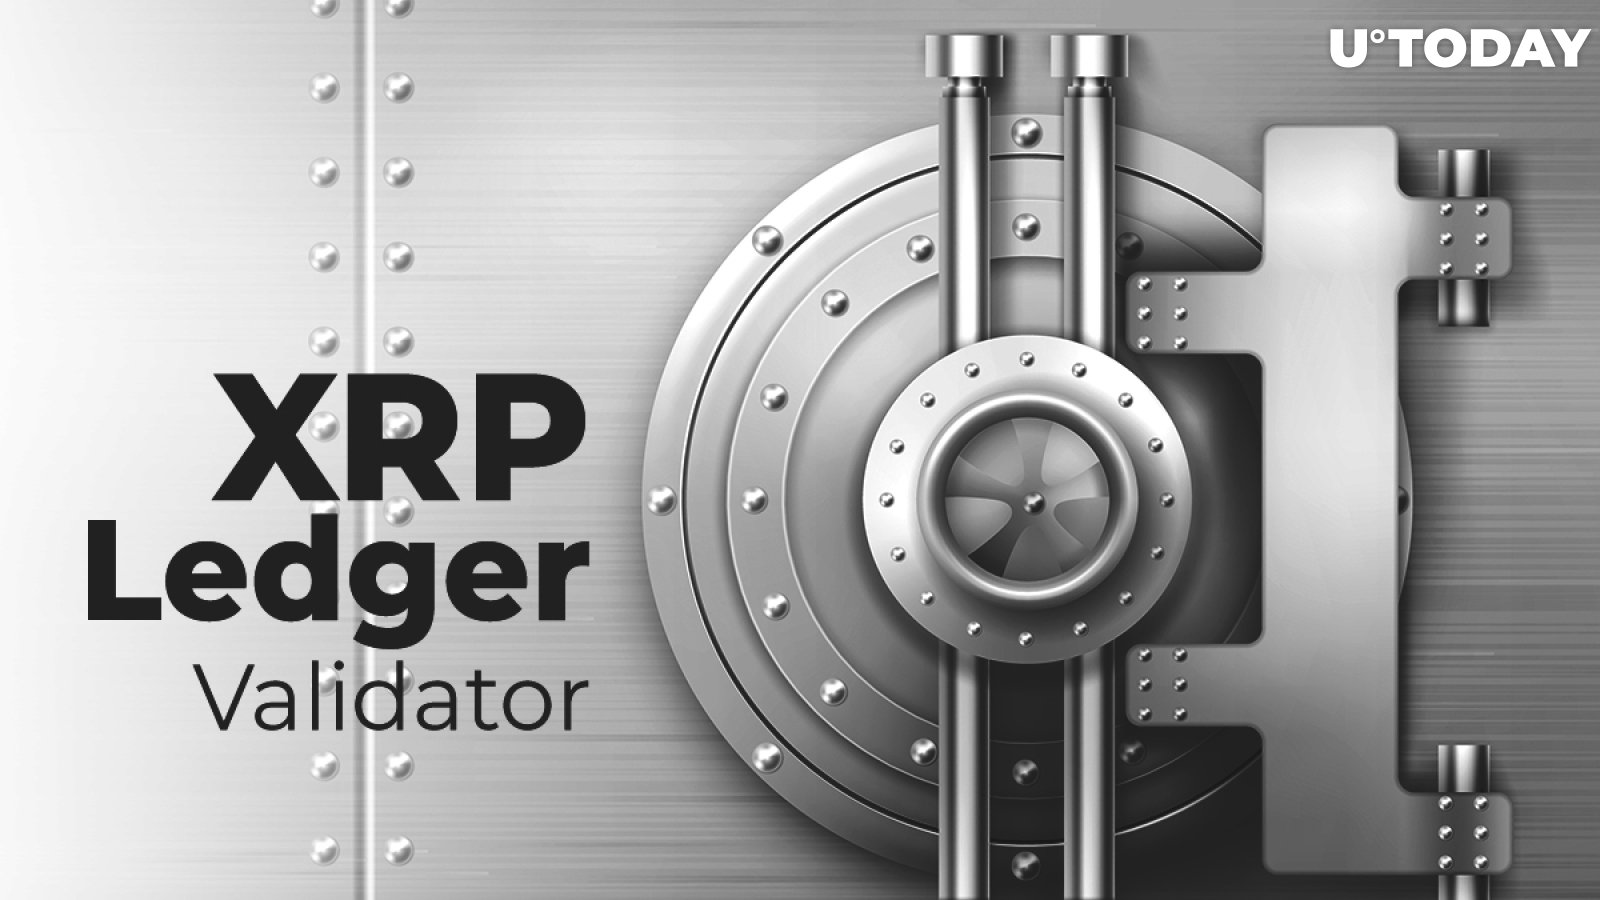 XRP Ledger Validator Reveals It Utilizes Former Nuclear Bunker